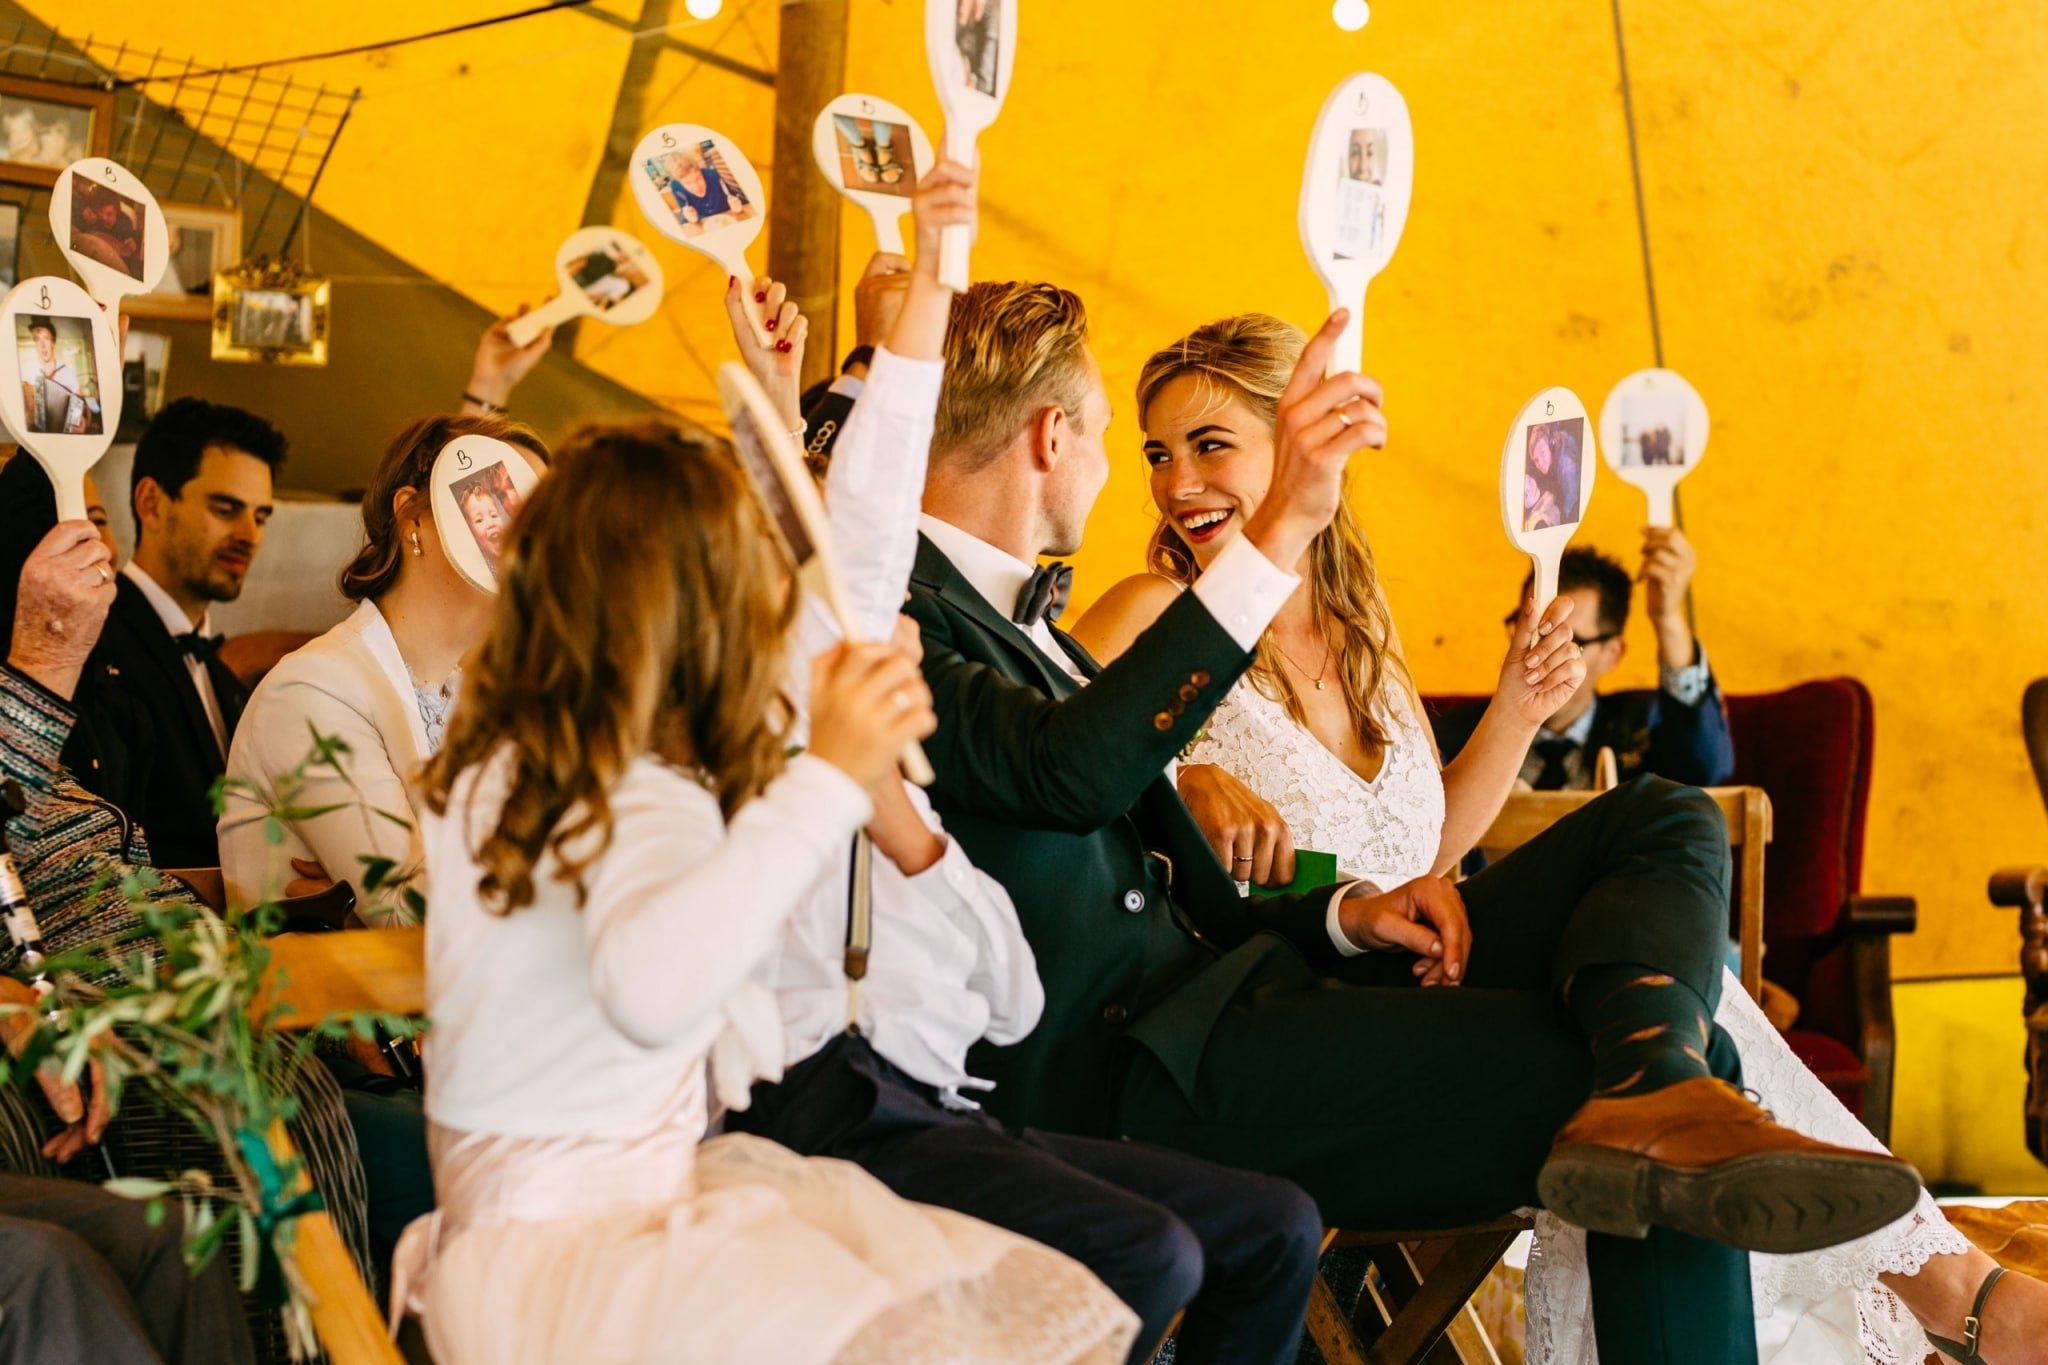 Een huwelijksceremonie in een tent met mensen die foto's omhoog houden.